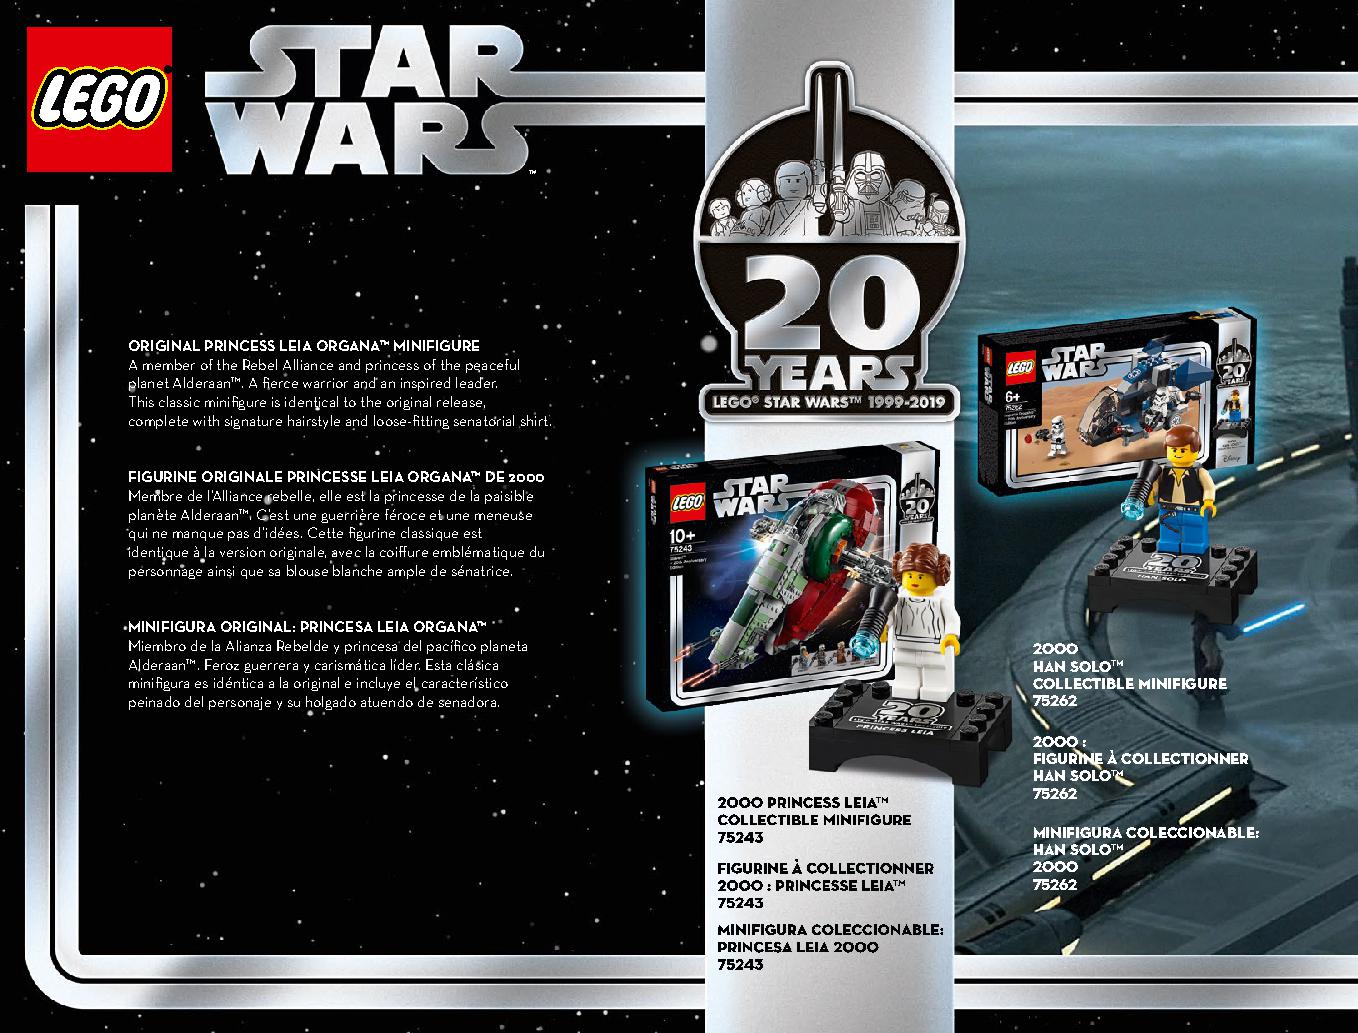 스타워즈 20주년 기념 - 슬레이브 l™ 75243 레고 세트 제품정보 레고 조립설명서 6 page